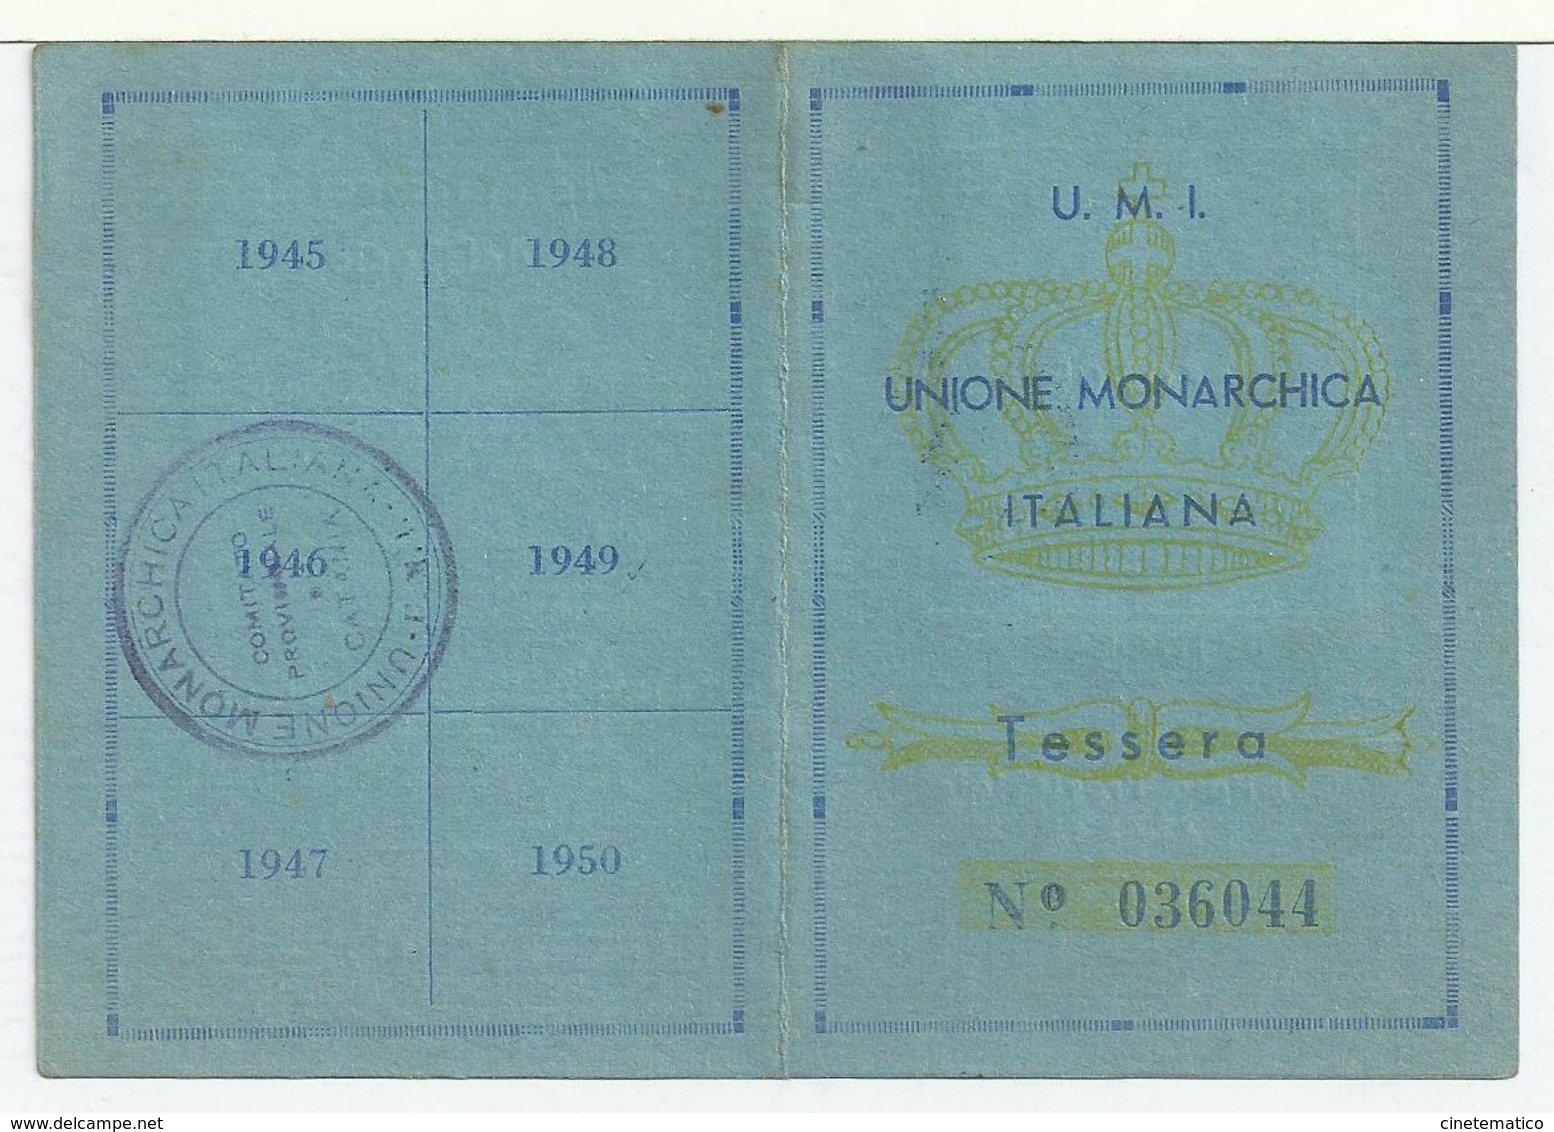 Tessera U.M.I. - UNIONE MONARCHICA ITALIANA Del 28/5/1946 - Documenti Storici